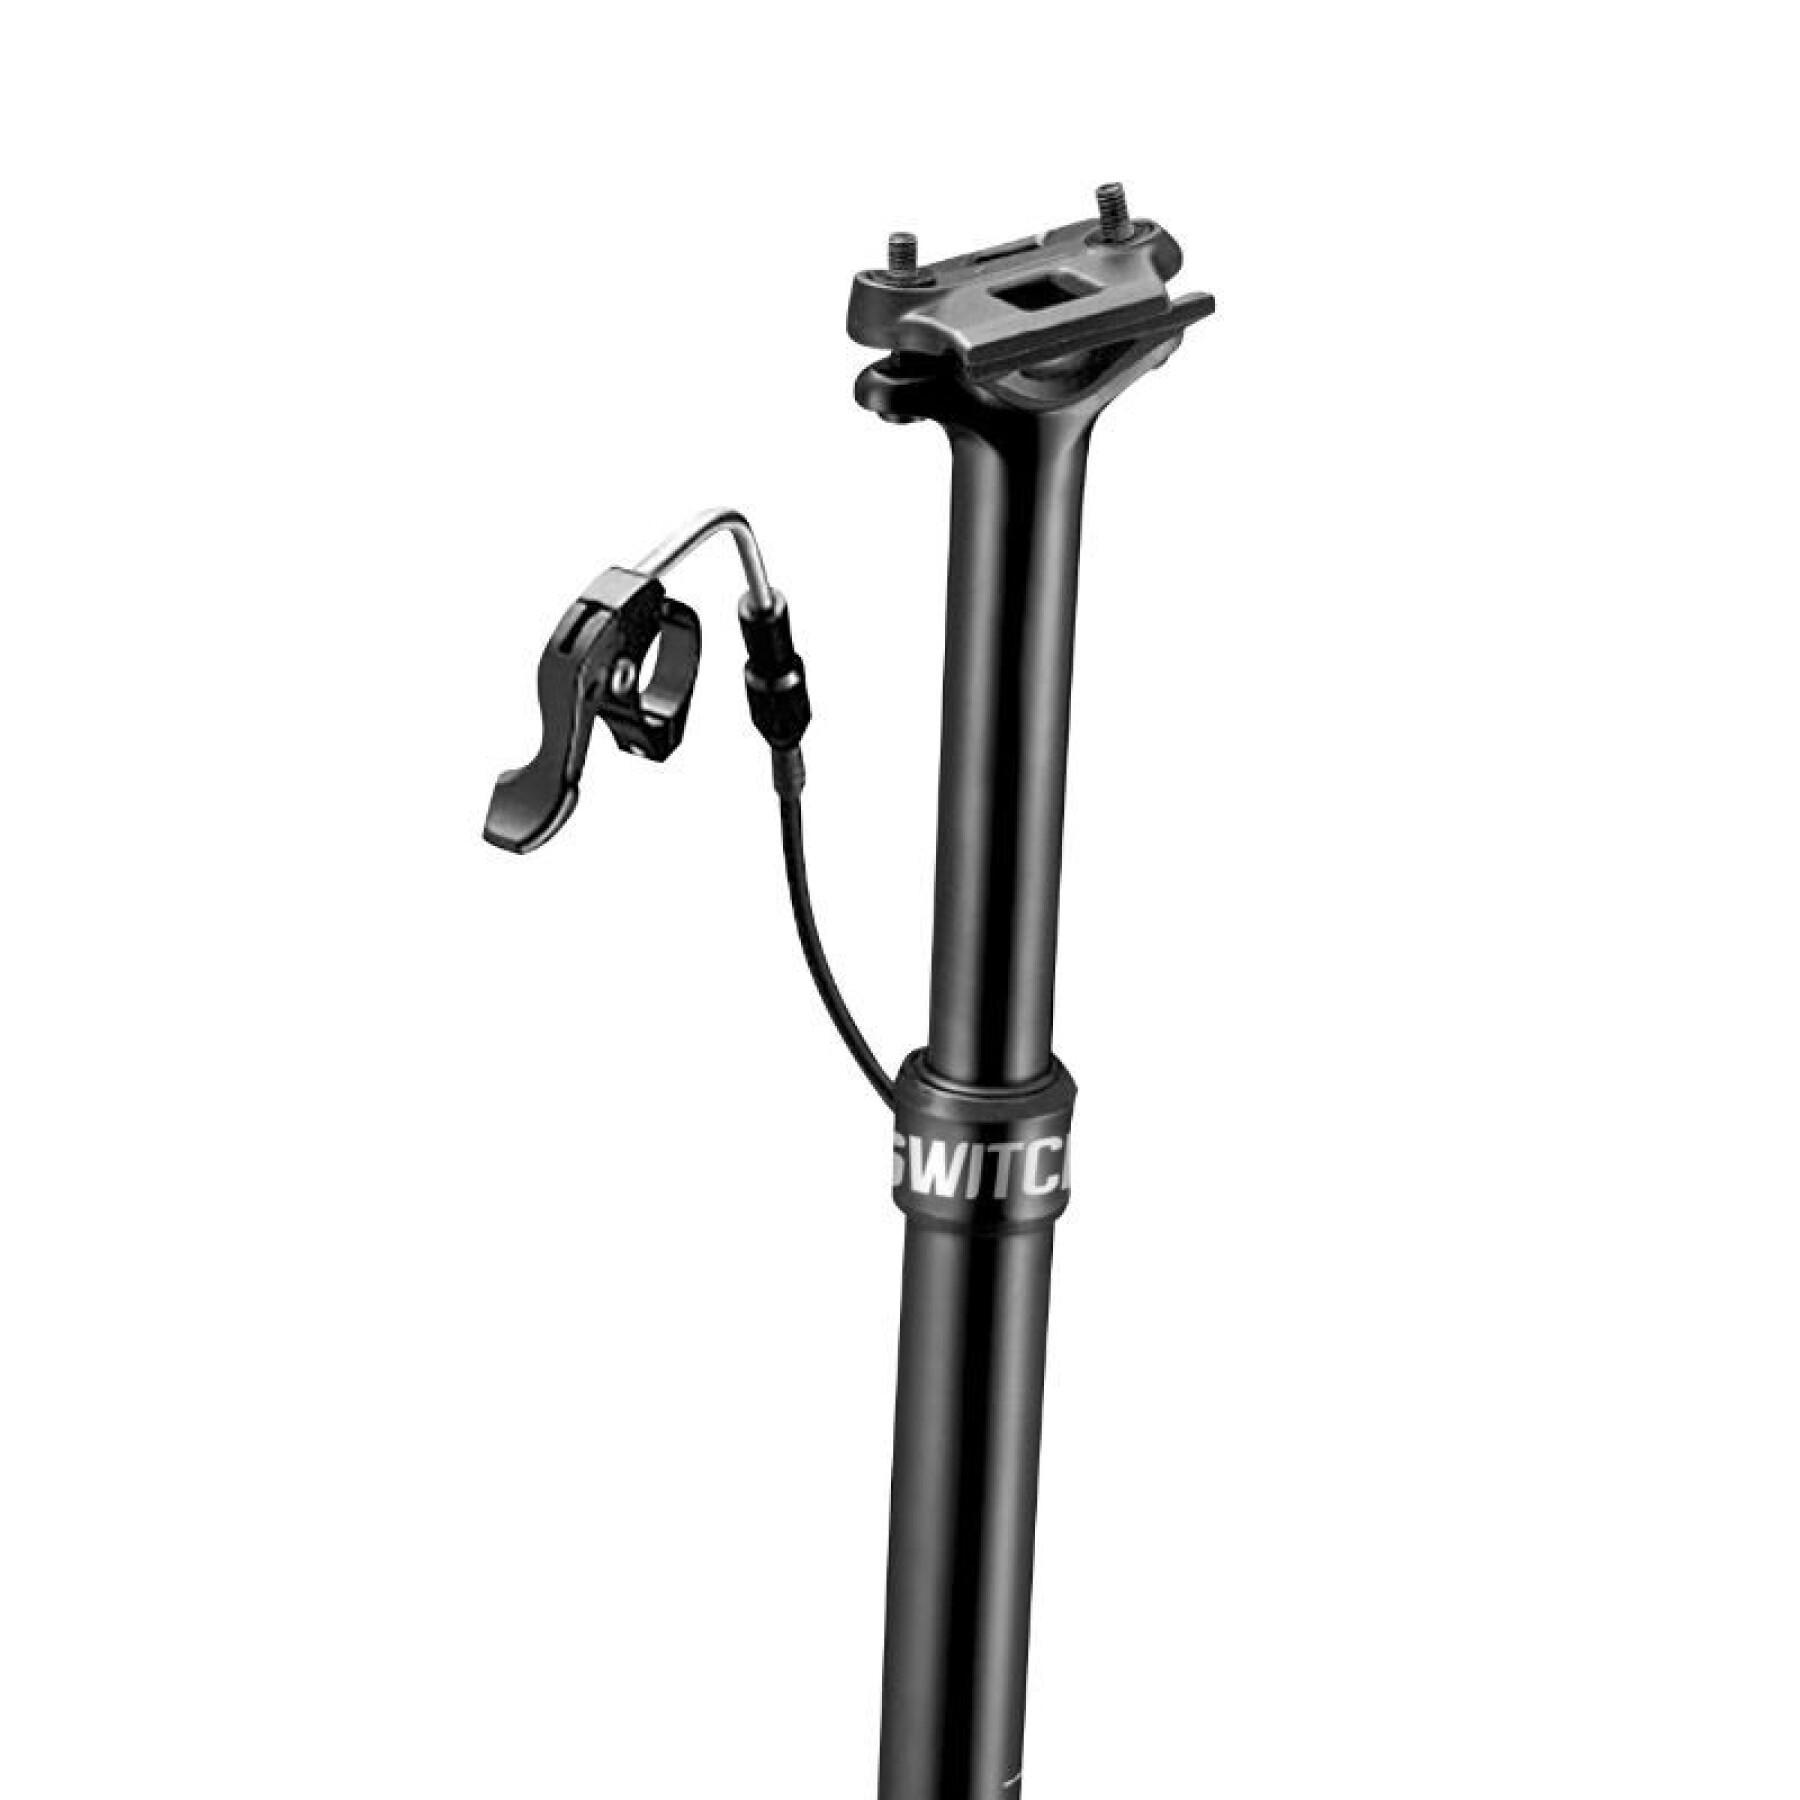 Posto de assento ajustável para bicicleta de montanha com cabo interno, fixação central em alumínio Gist Switch SW-125